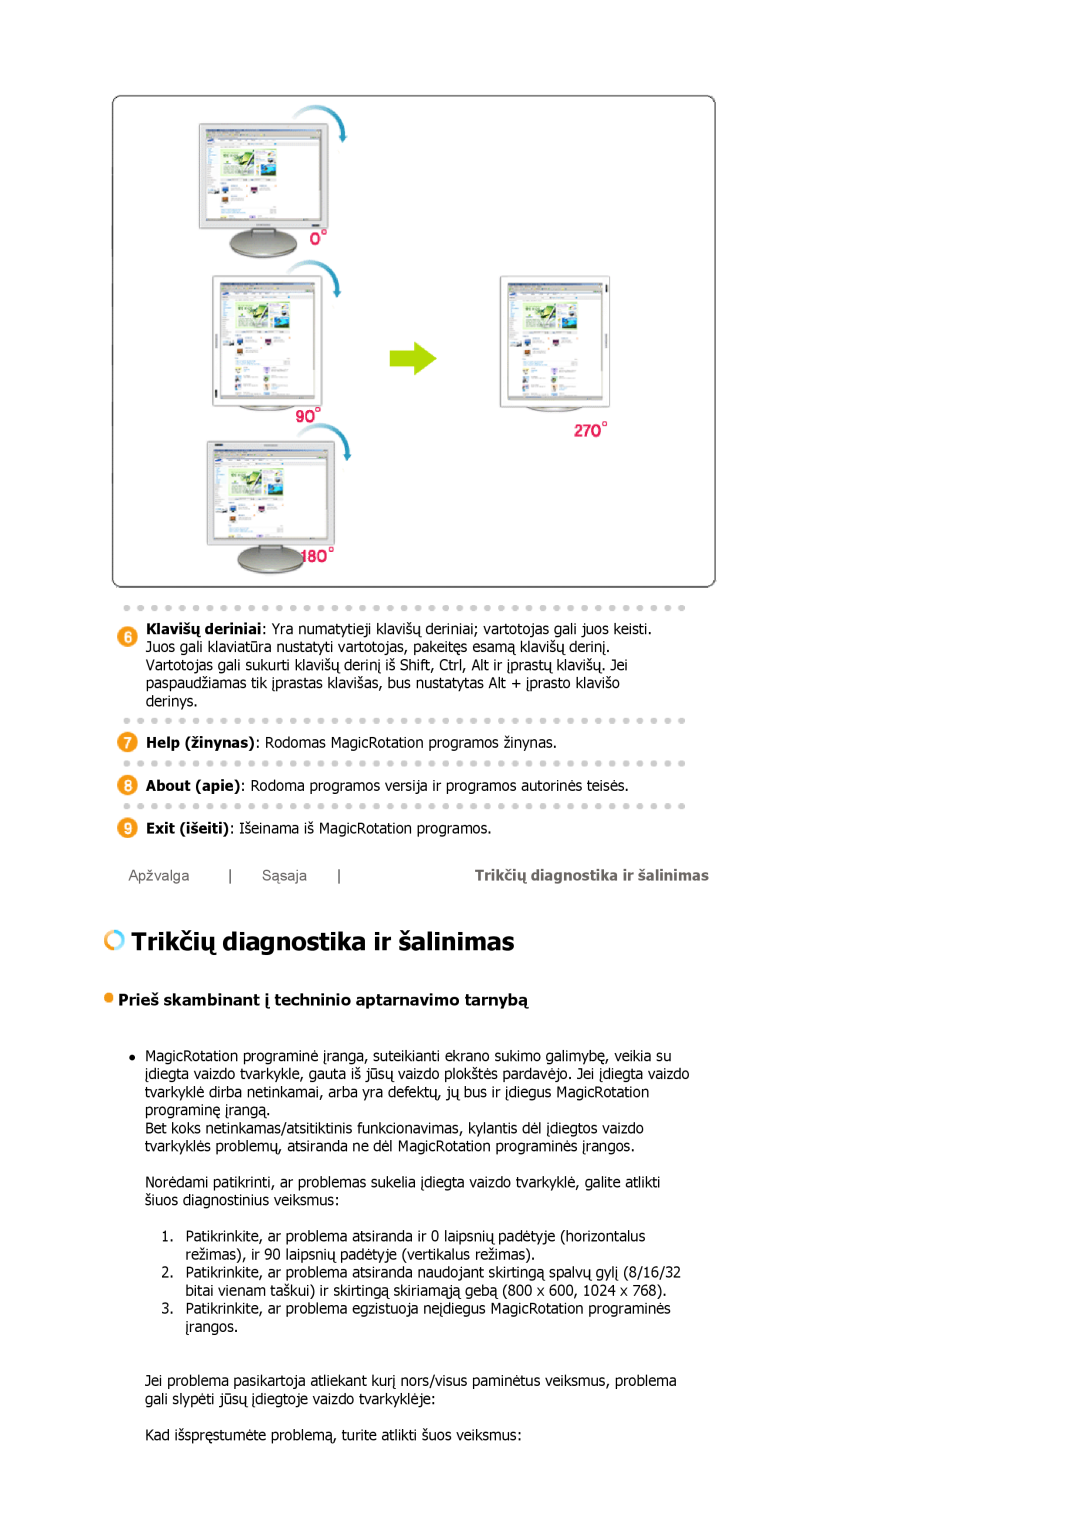 Samsung LS19HJDQFV/EDC manual Trikčių diagnostika ir šalinimas, Prieš skambinant į techninio aptarnavimo tarnybą, Apžvalga 